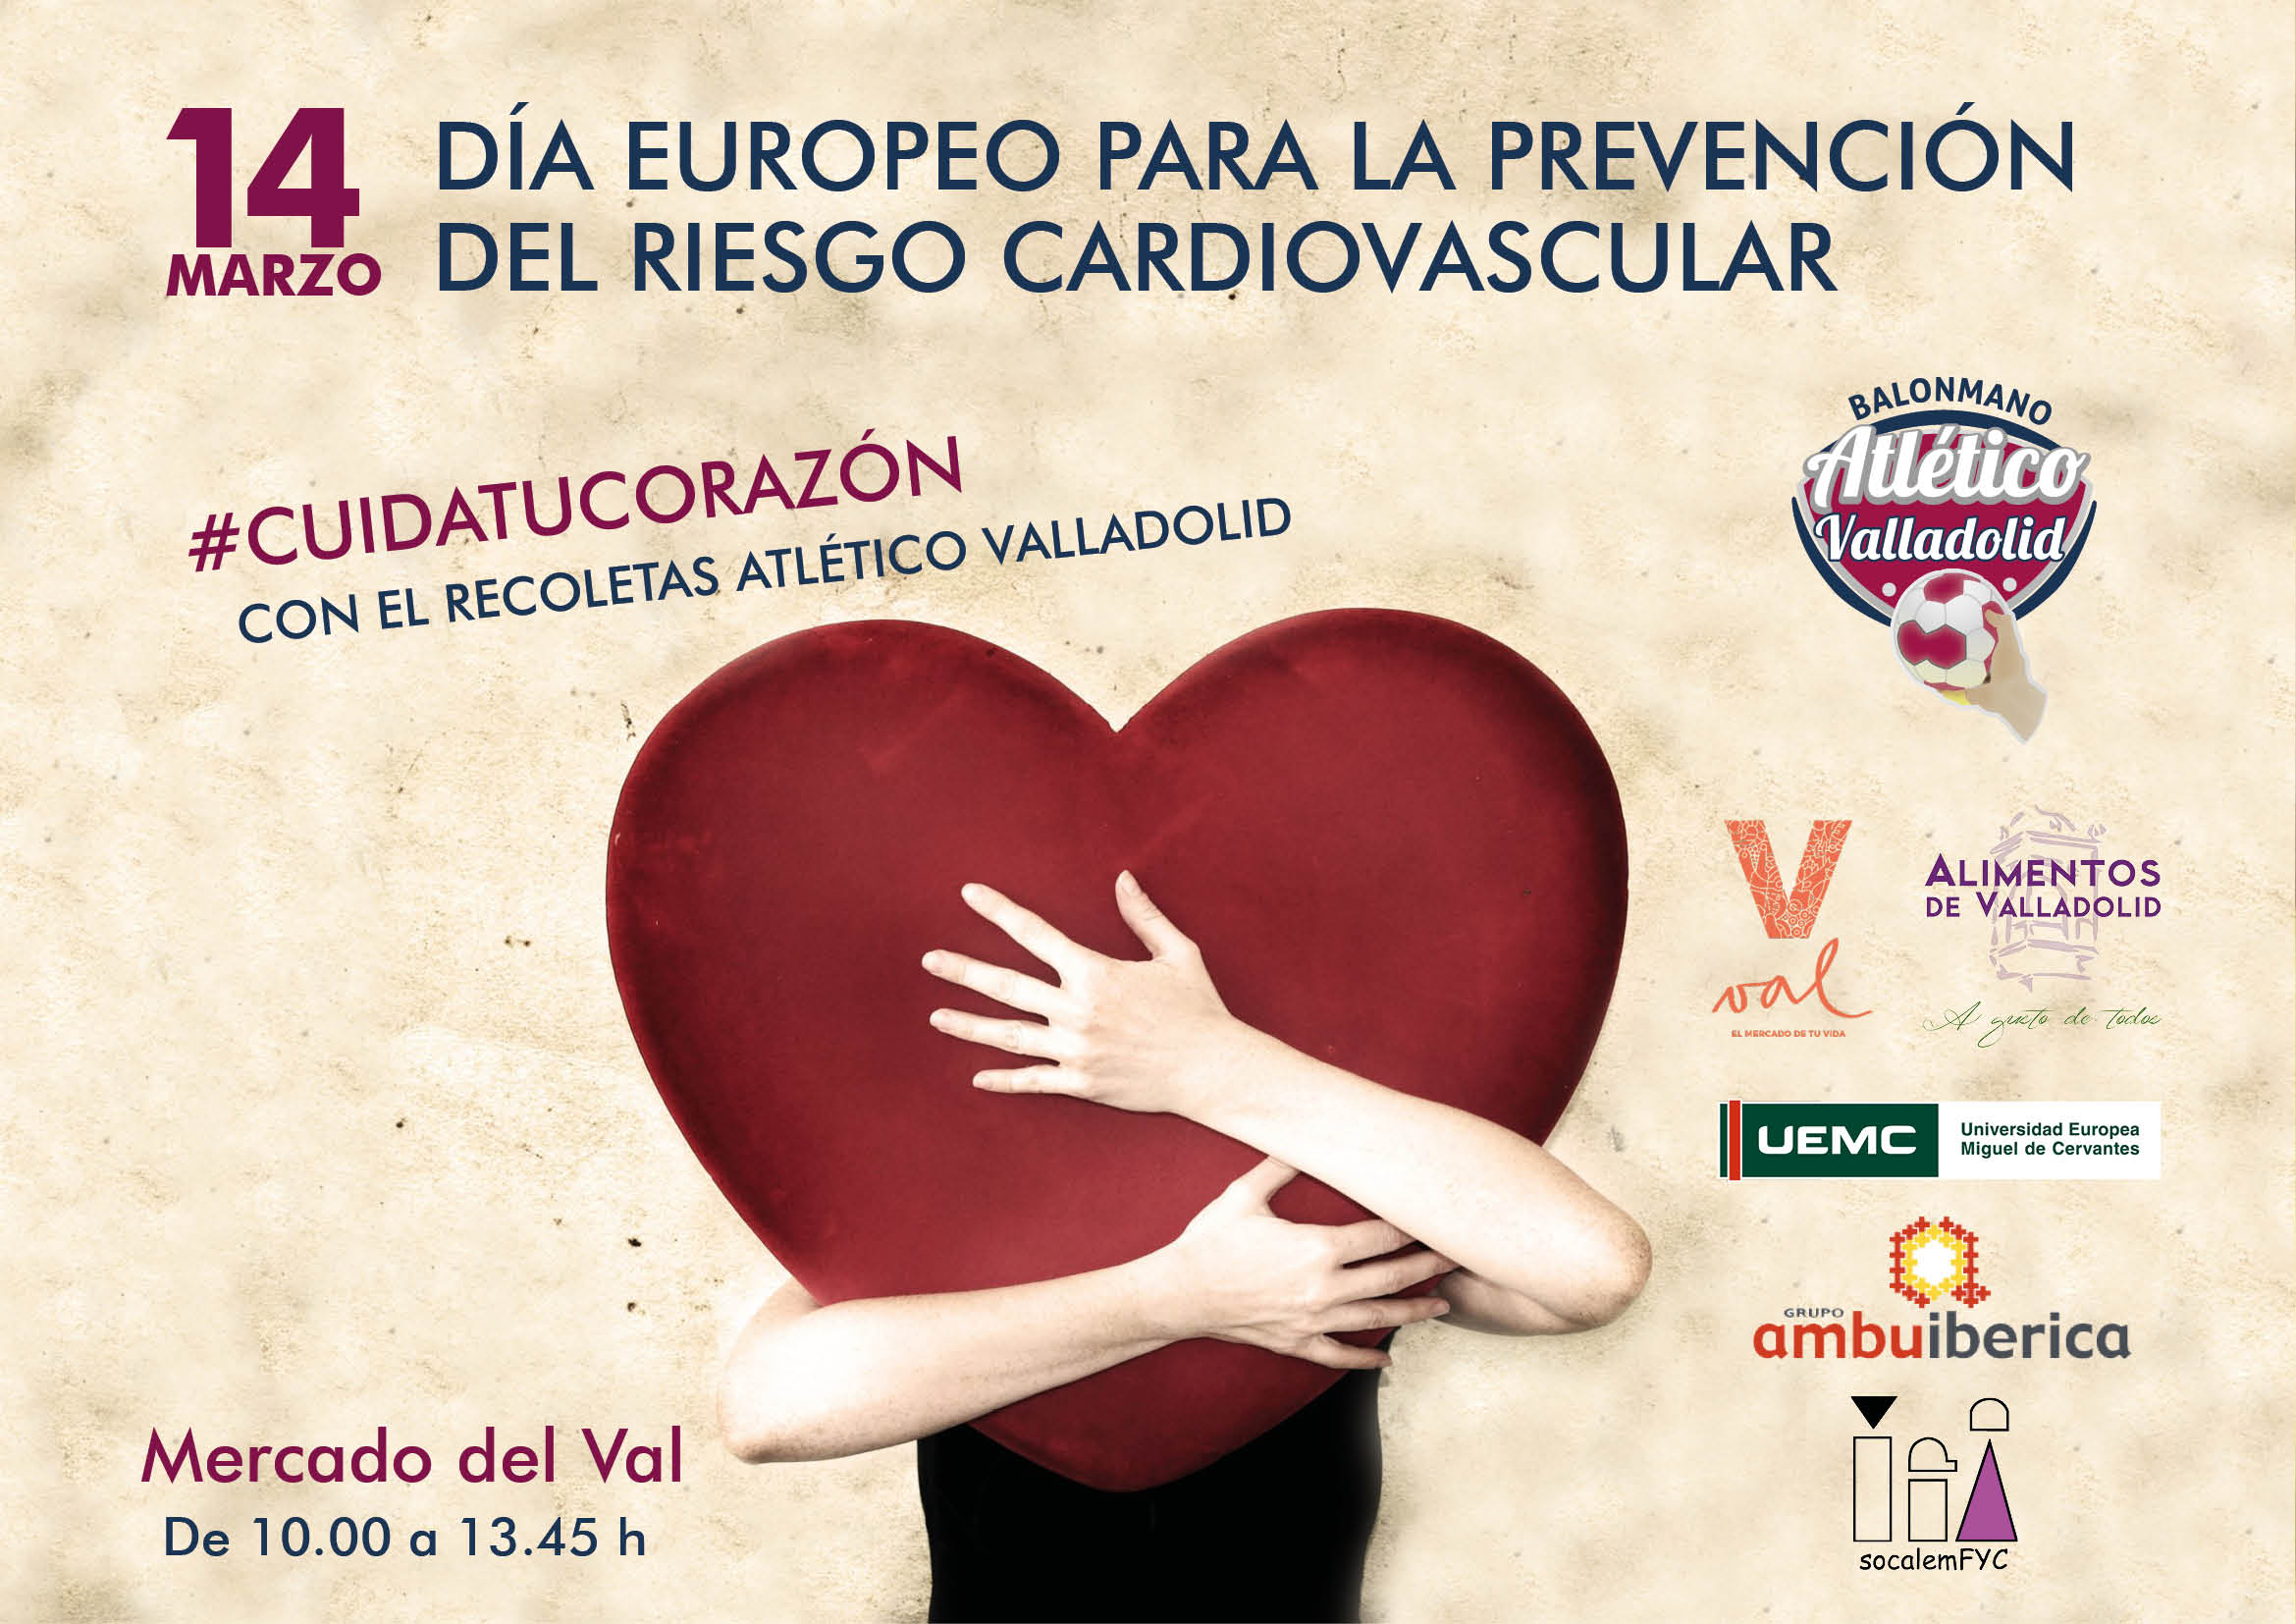 Todo listo para celebrar el Día Europeo para la prevención del riesgo cardiovascular | Galería 1 / 1